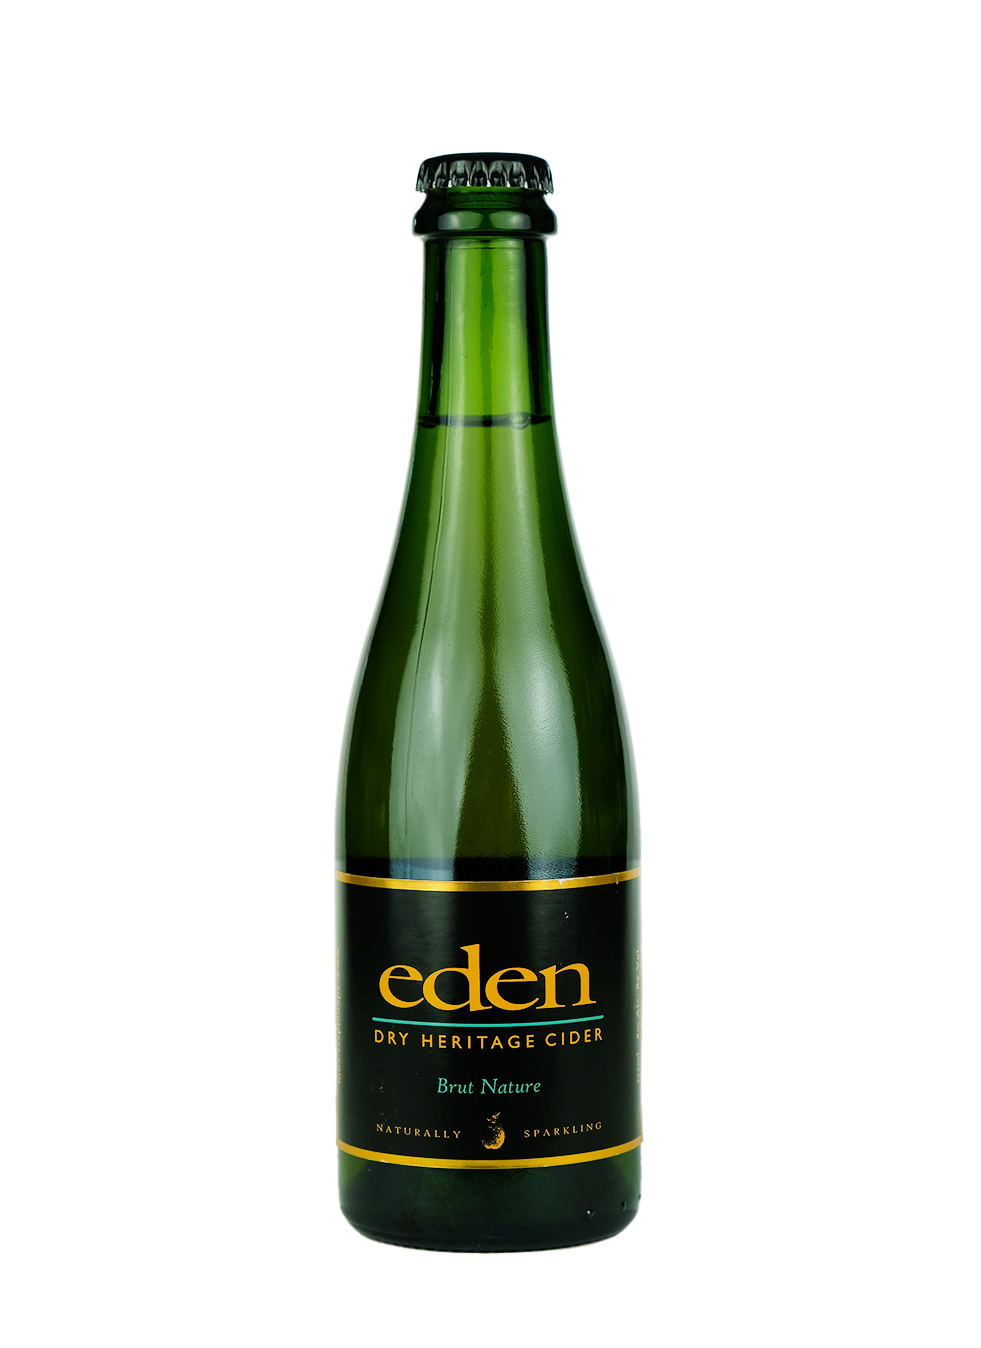 Eden Dry Heritage Cider 'Brut Nature' 375ml